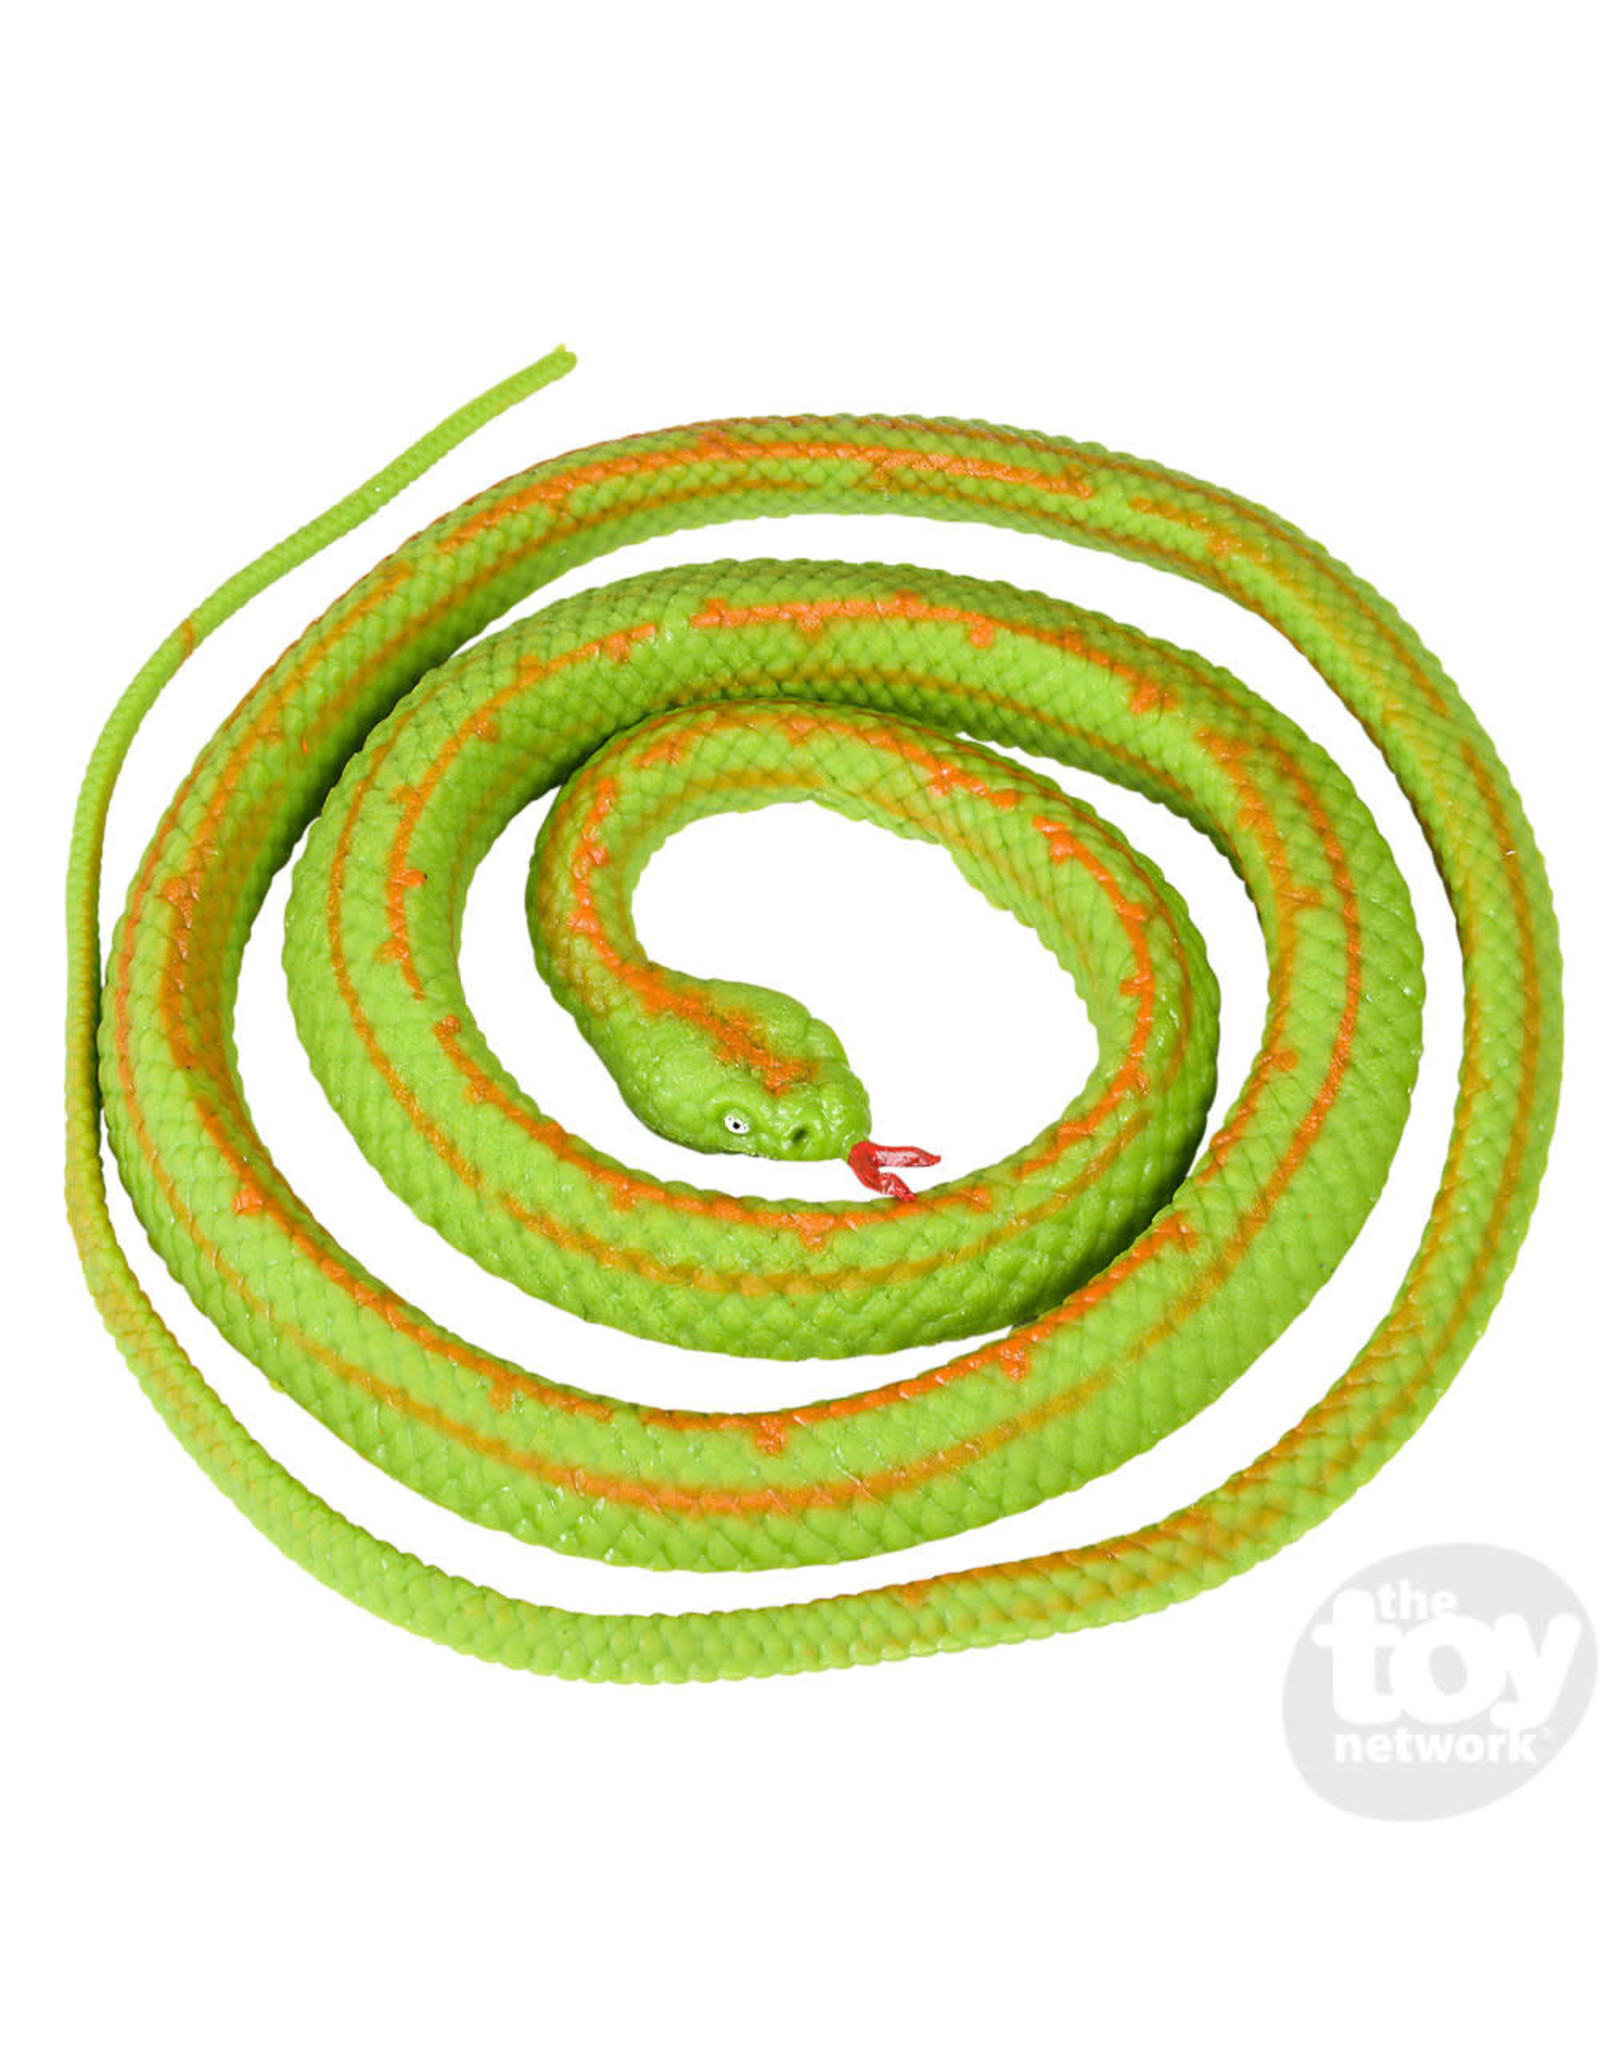 The Toy Network Rubber Desert Rosy Boa Snake 48"